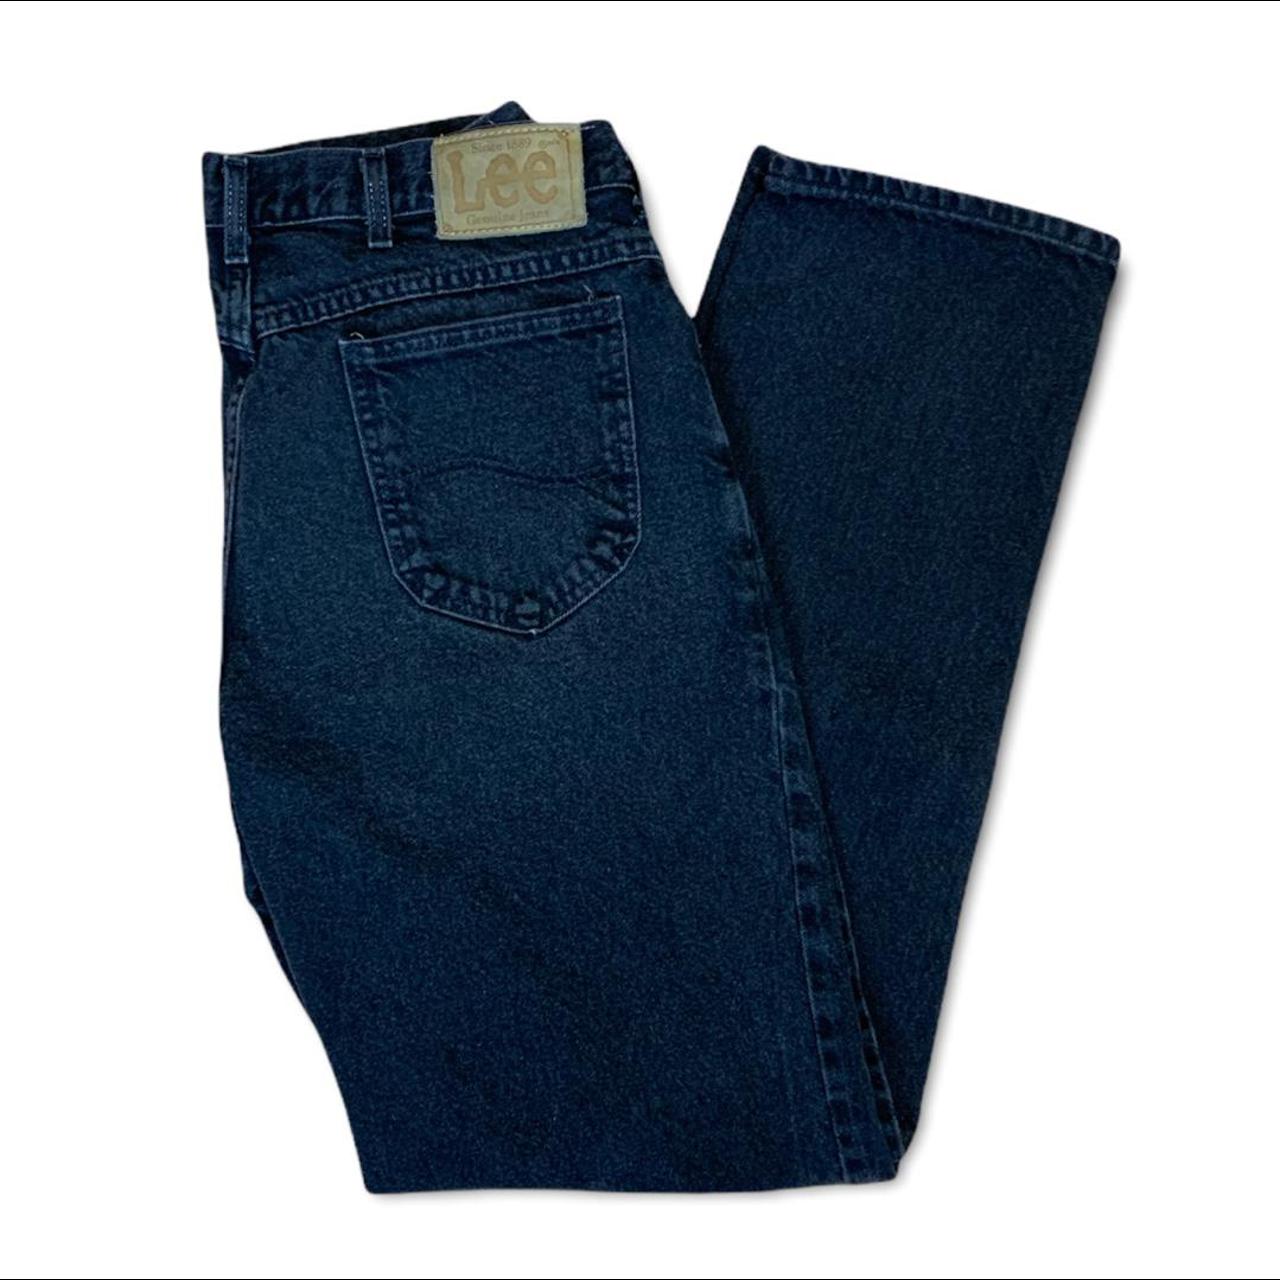 Vintage Vtg 90s Lee Faded Black Denim Jeans Pants... - Depop